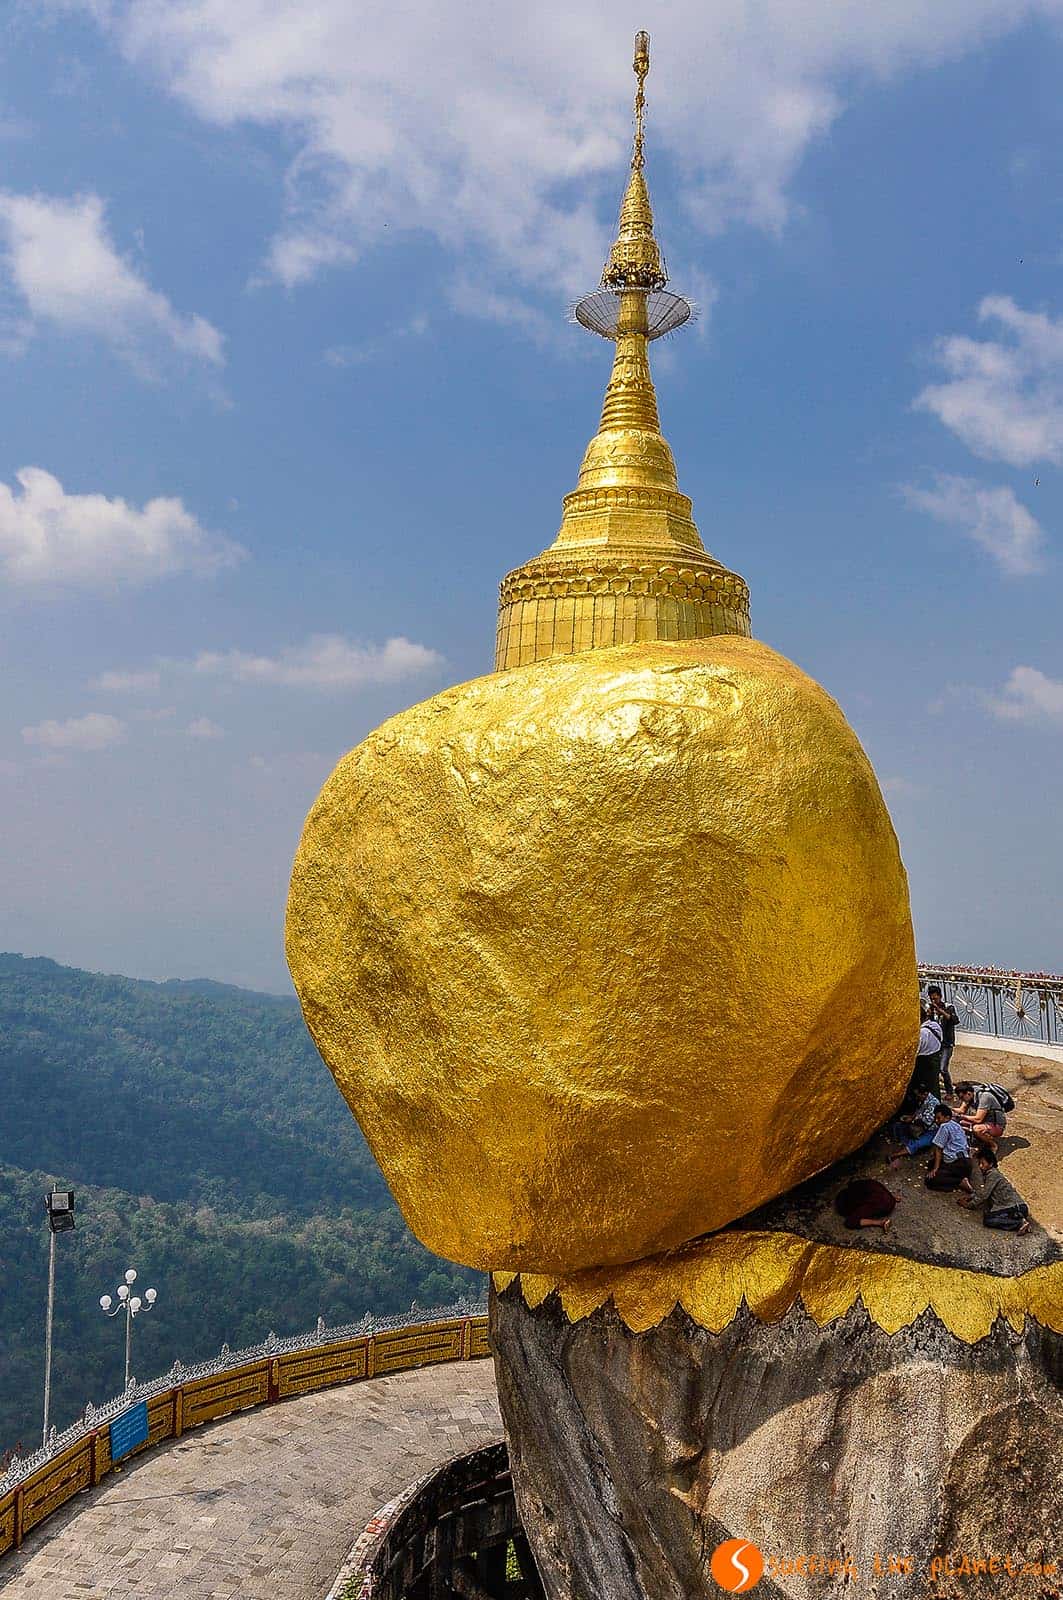 The Golden Rock, Myanmar